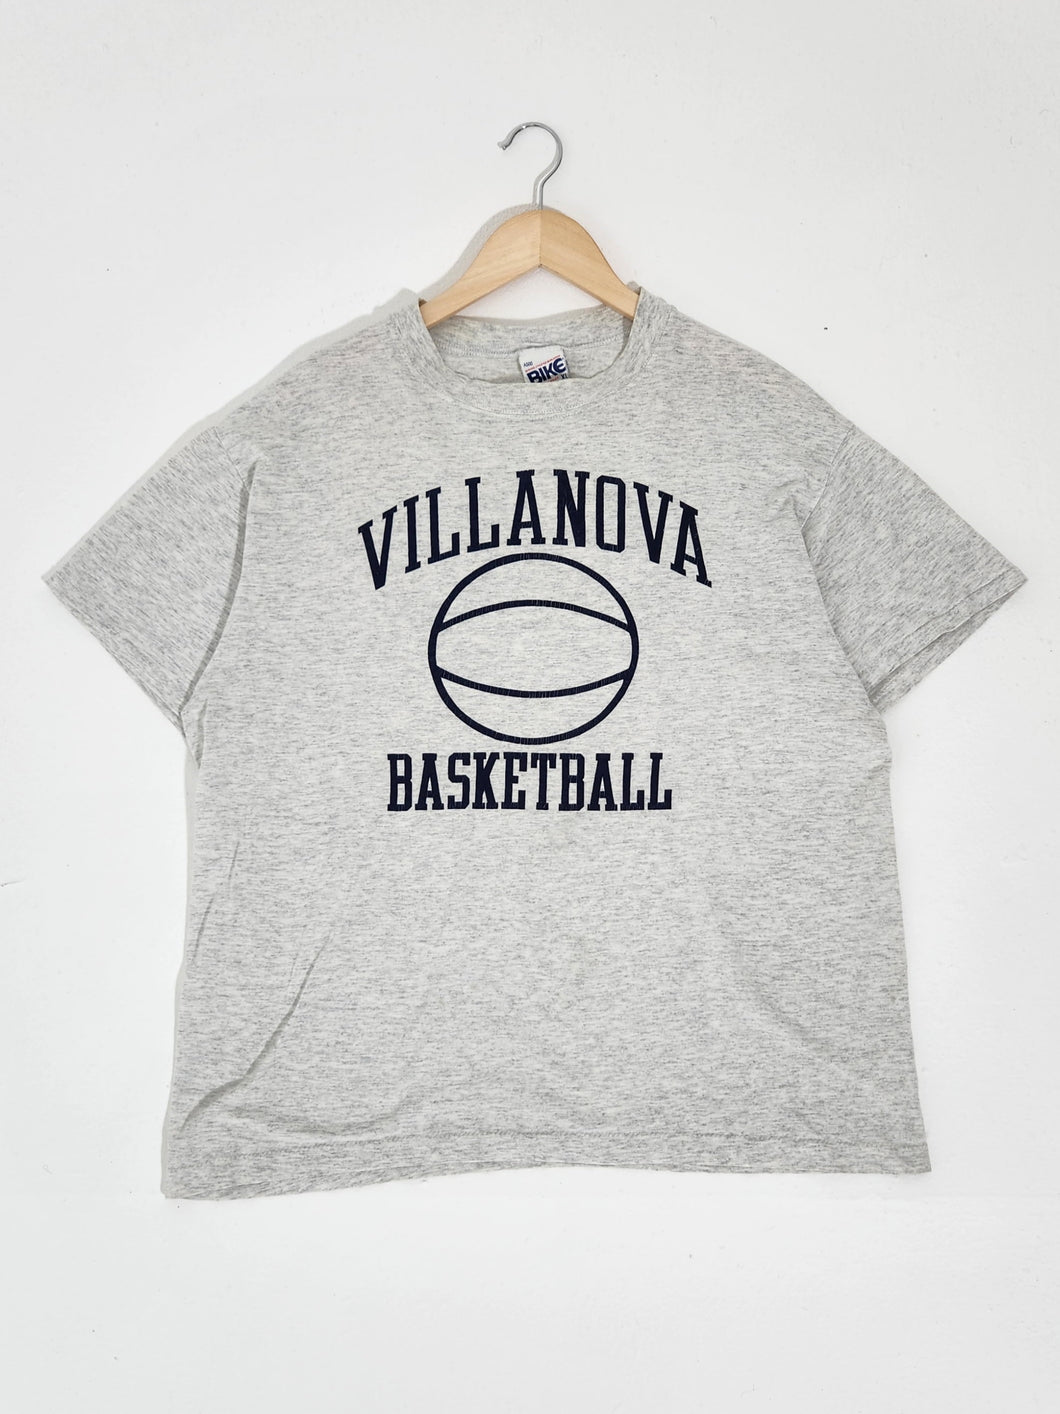 Vintage 1990's Villanova Basketball T-Shirt Sz. XL